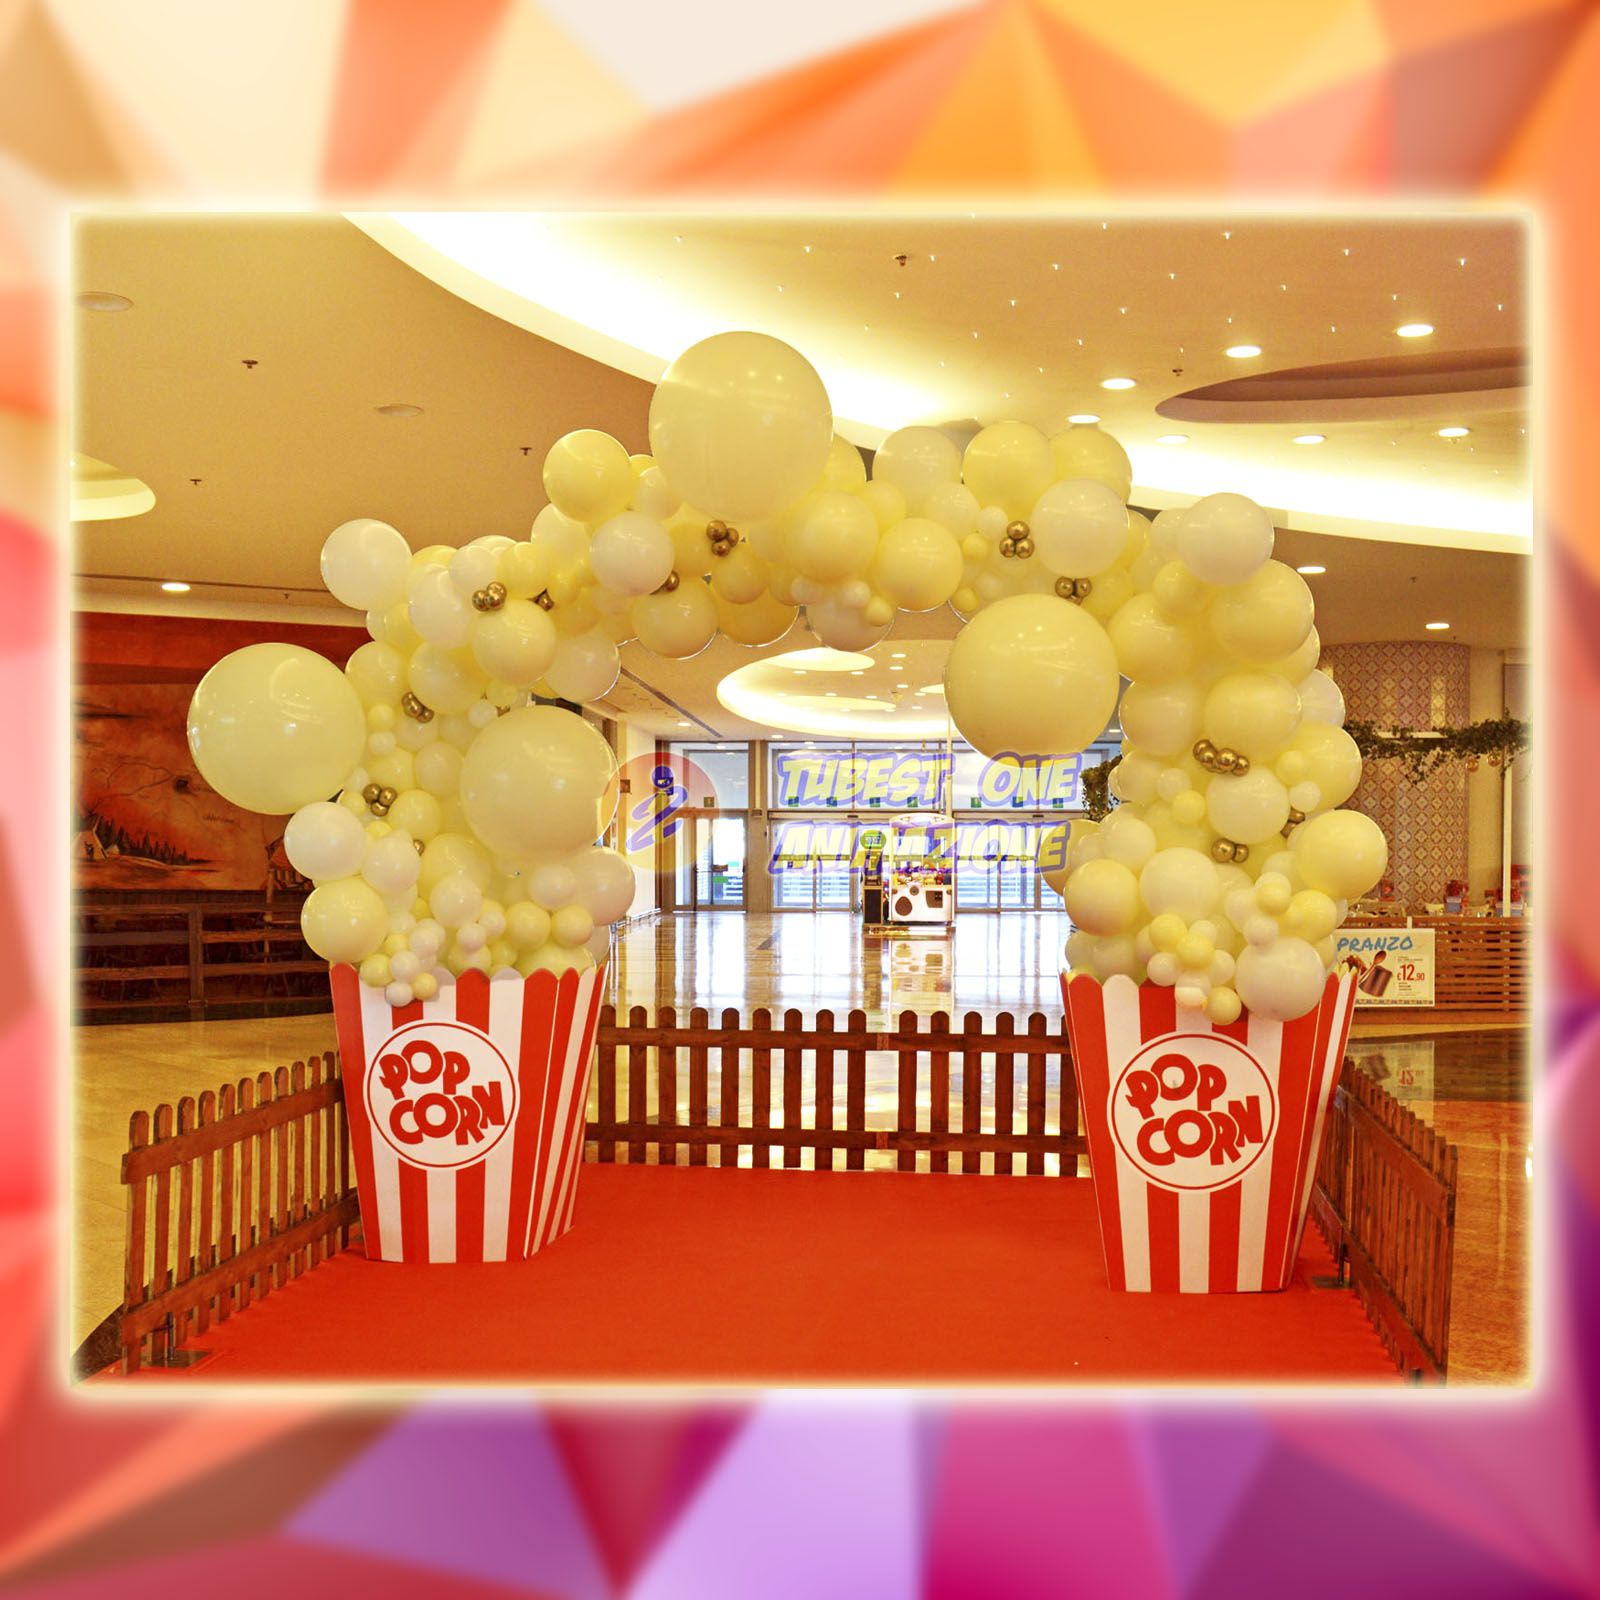 decorazione di palloncini a tema pop corn per eventi nei cinema e centri commerciali